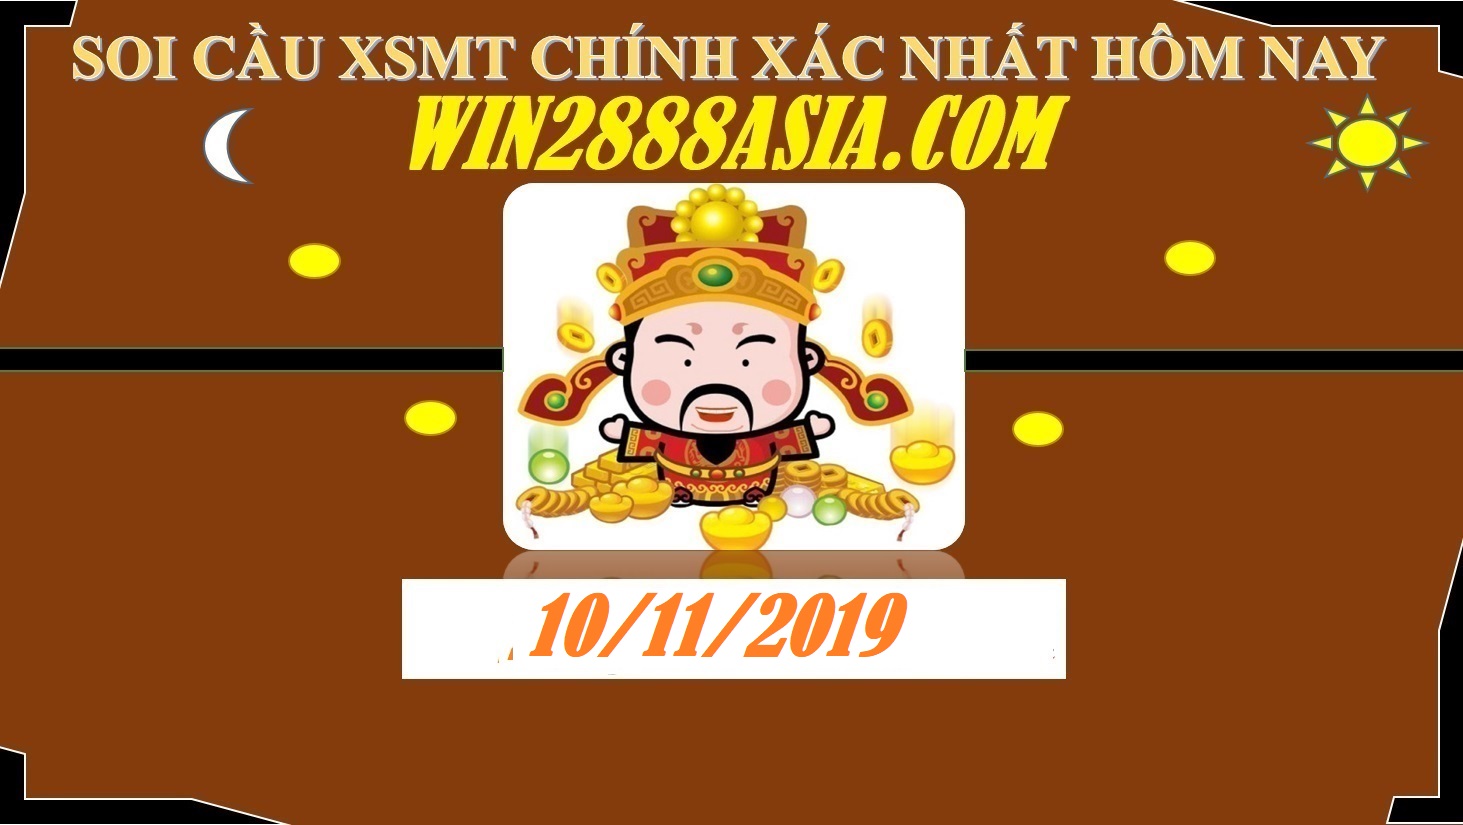 Soi cầu XSMT 10-11-2019 Win2888